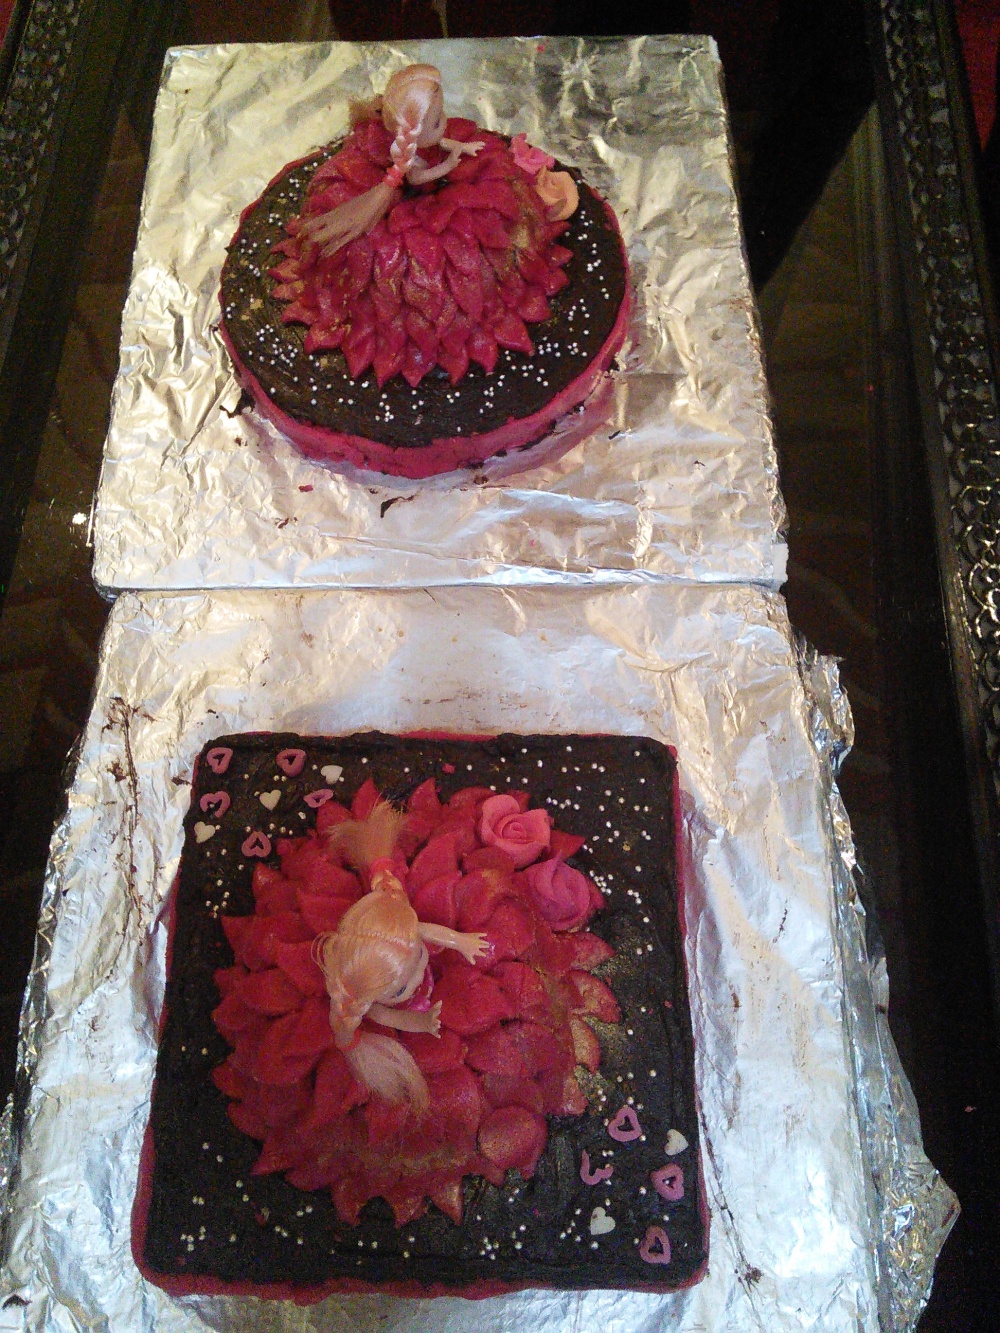 Princess' cakes